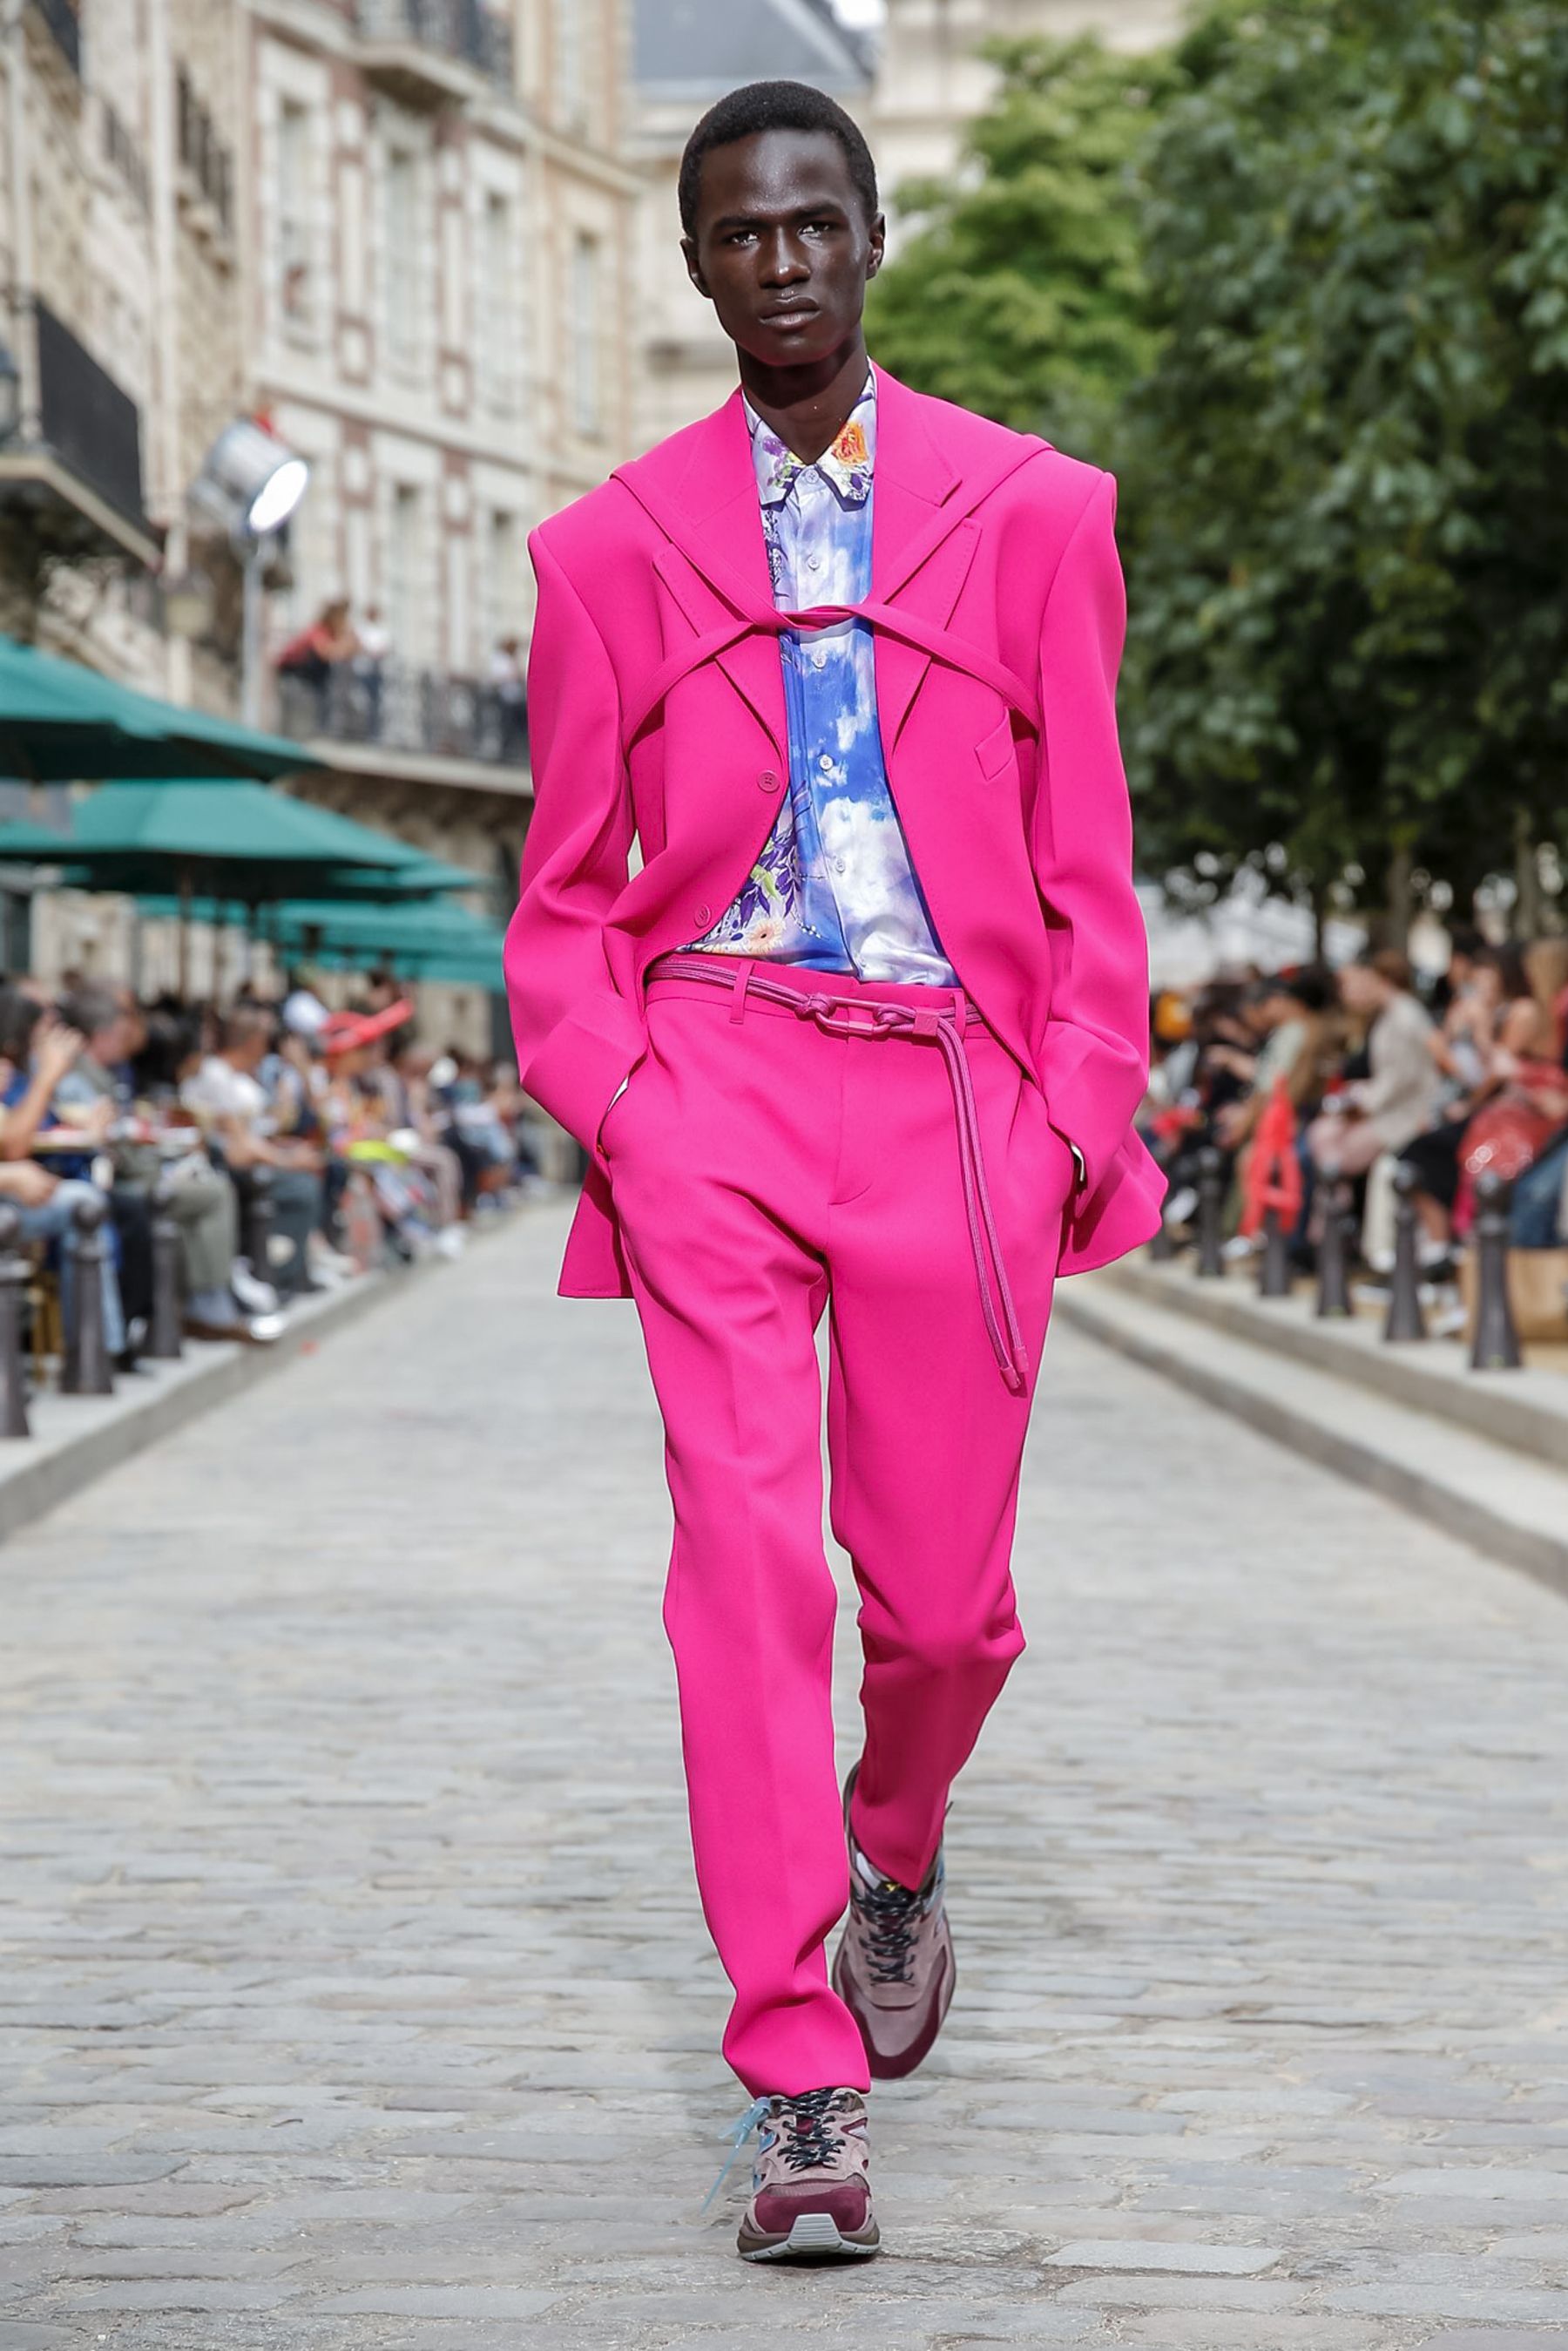 Louis Vuitton Summer 2020 Hombre Lookbook la coleccción más alegre